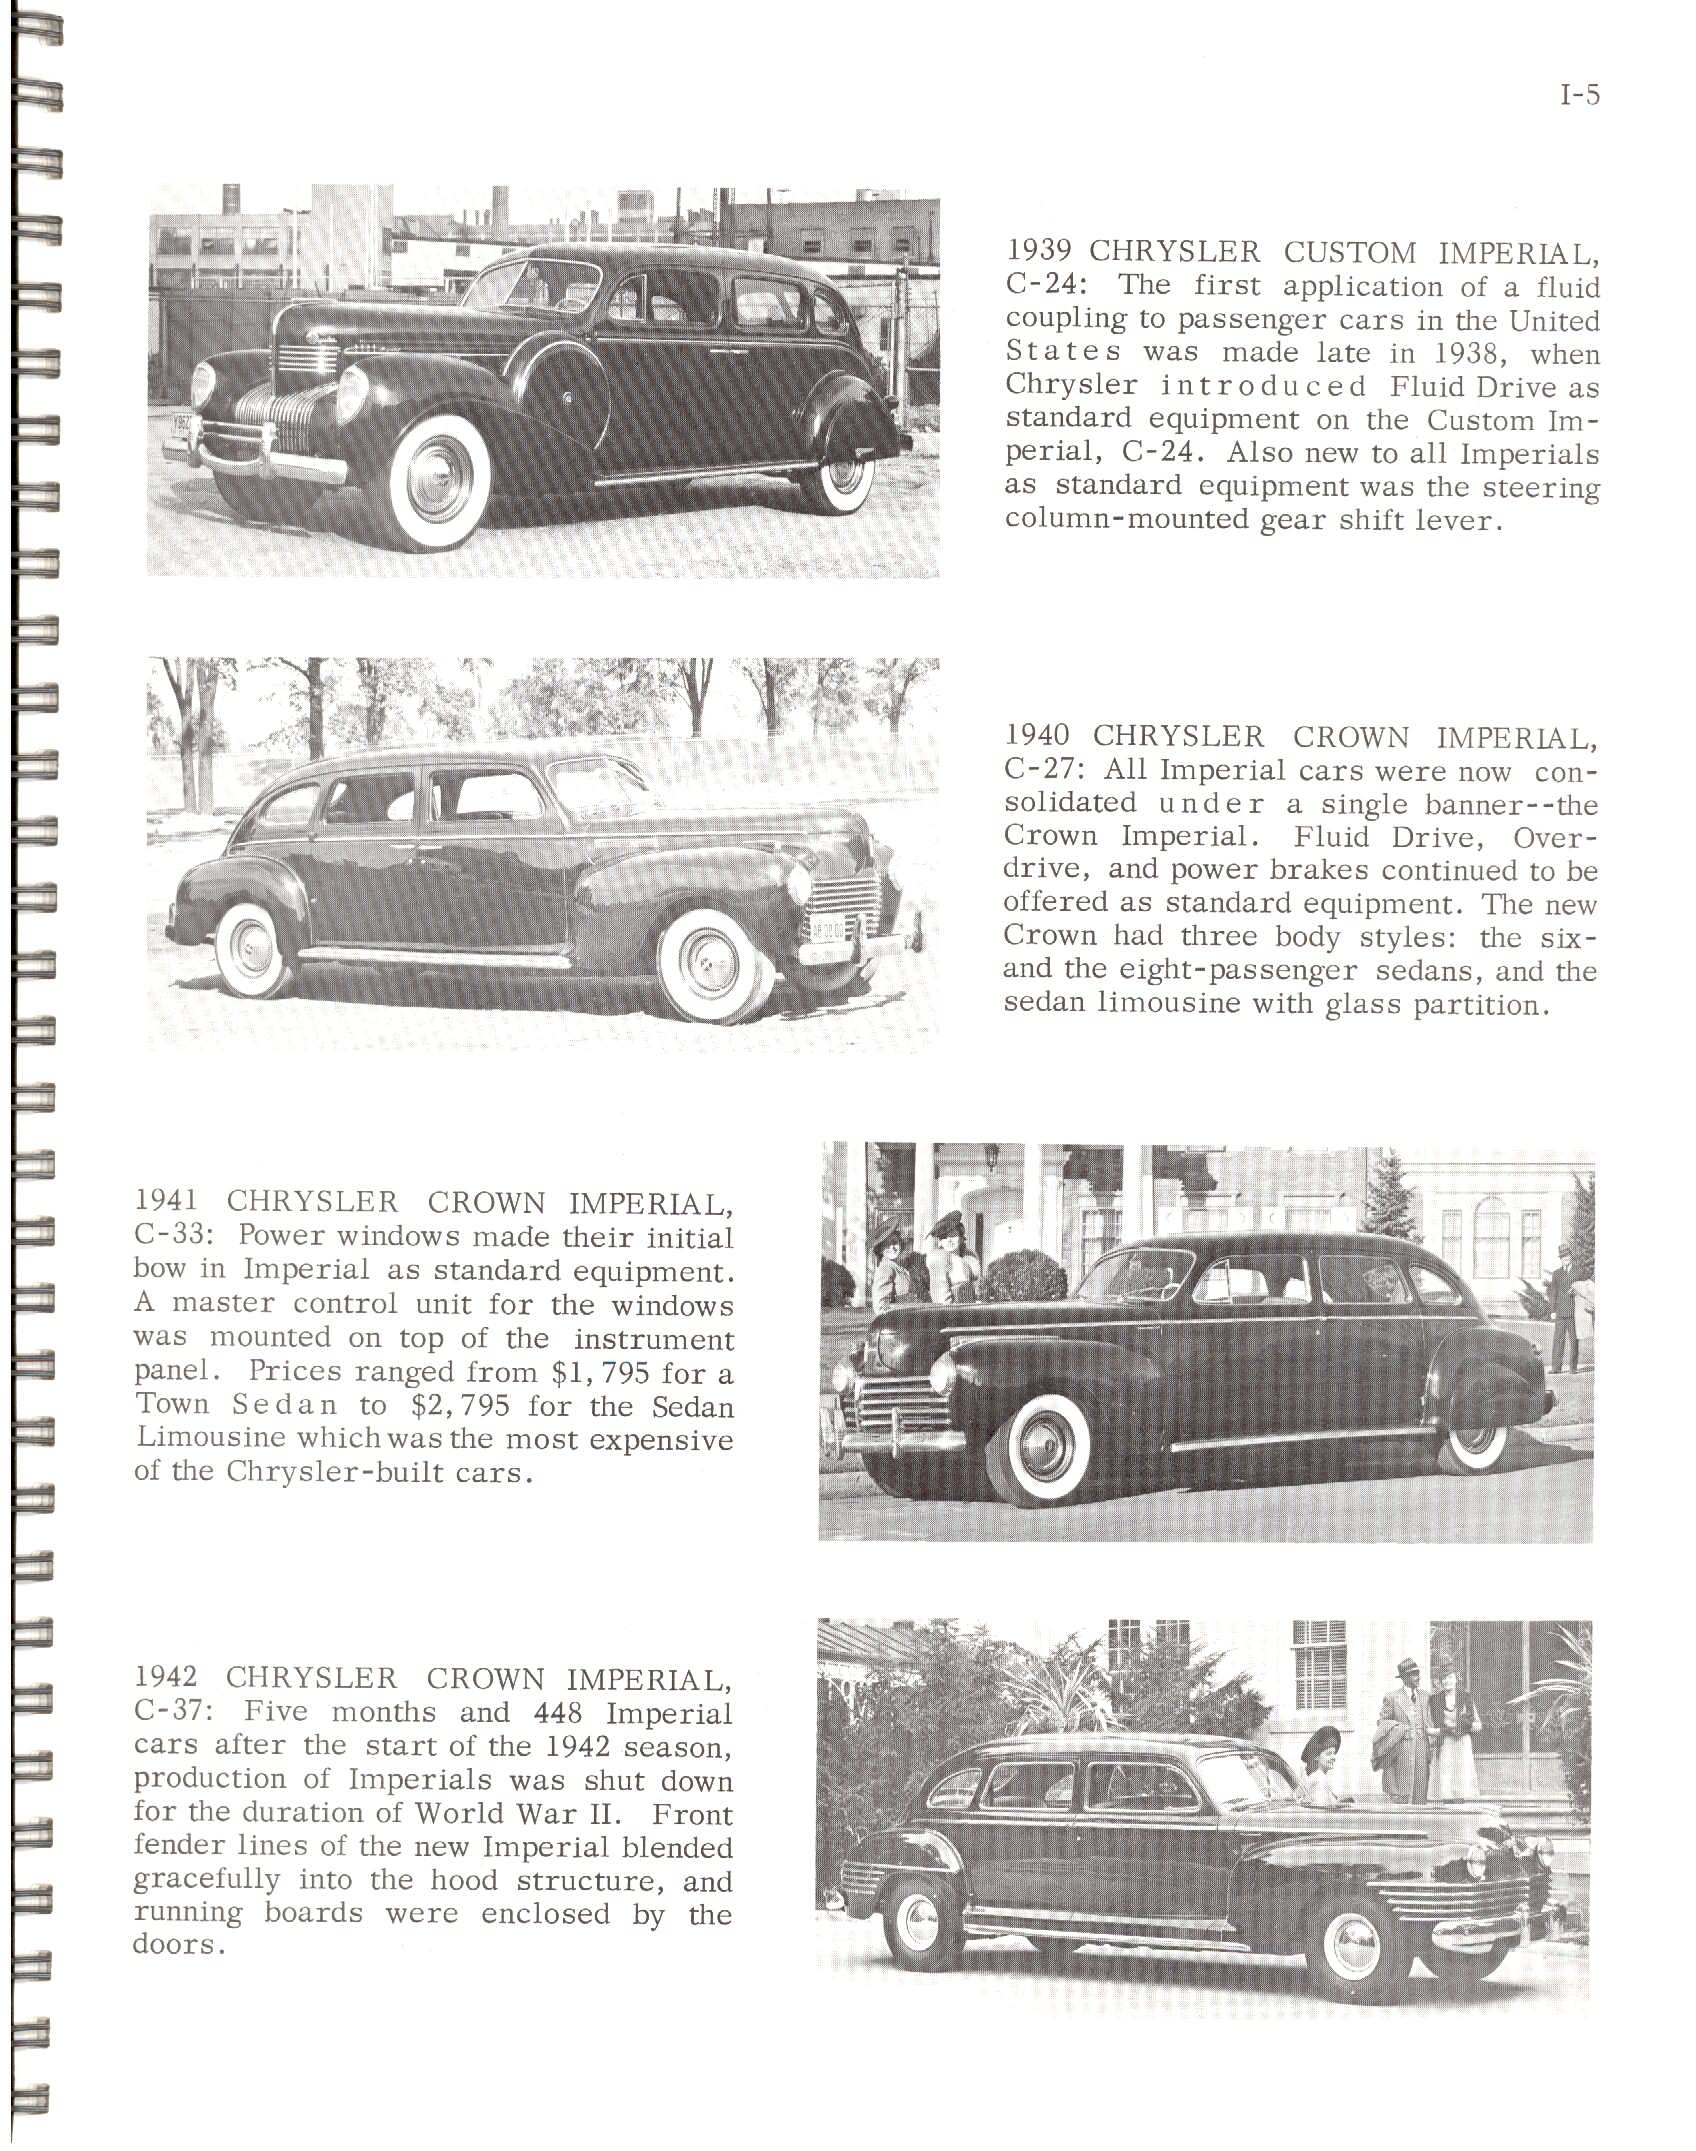 1966-History_Of_Chrysler_Cars-I05